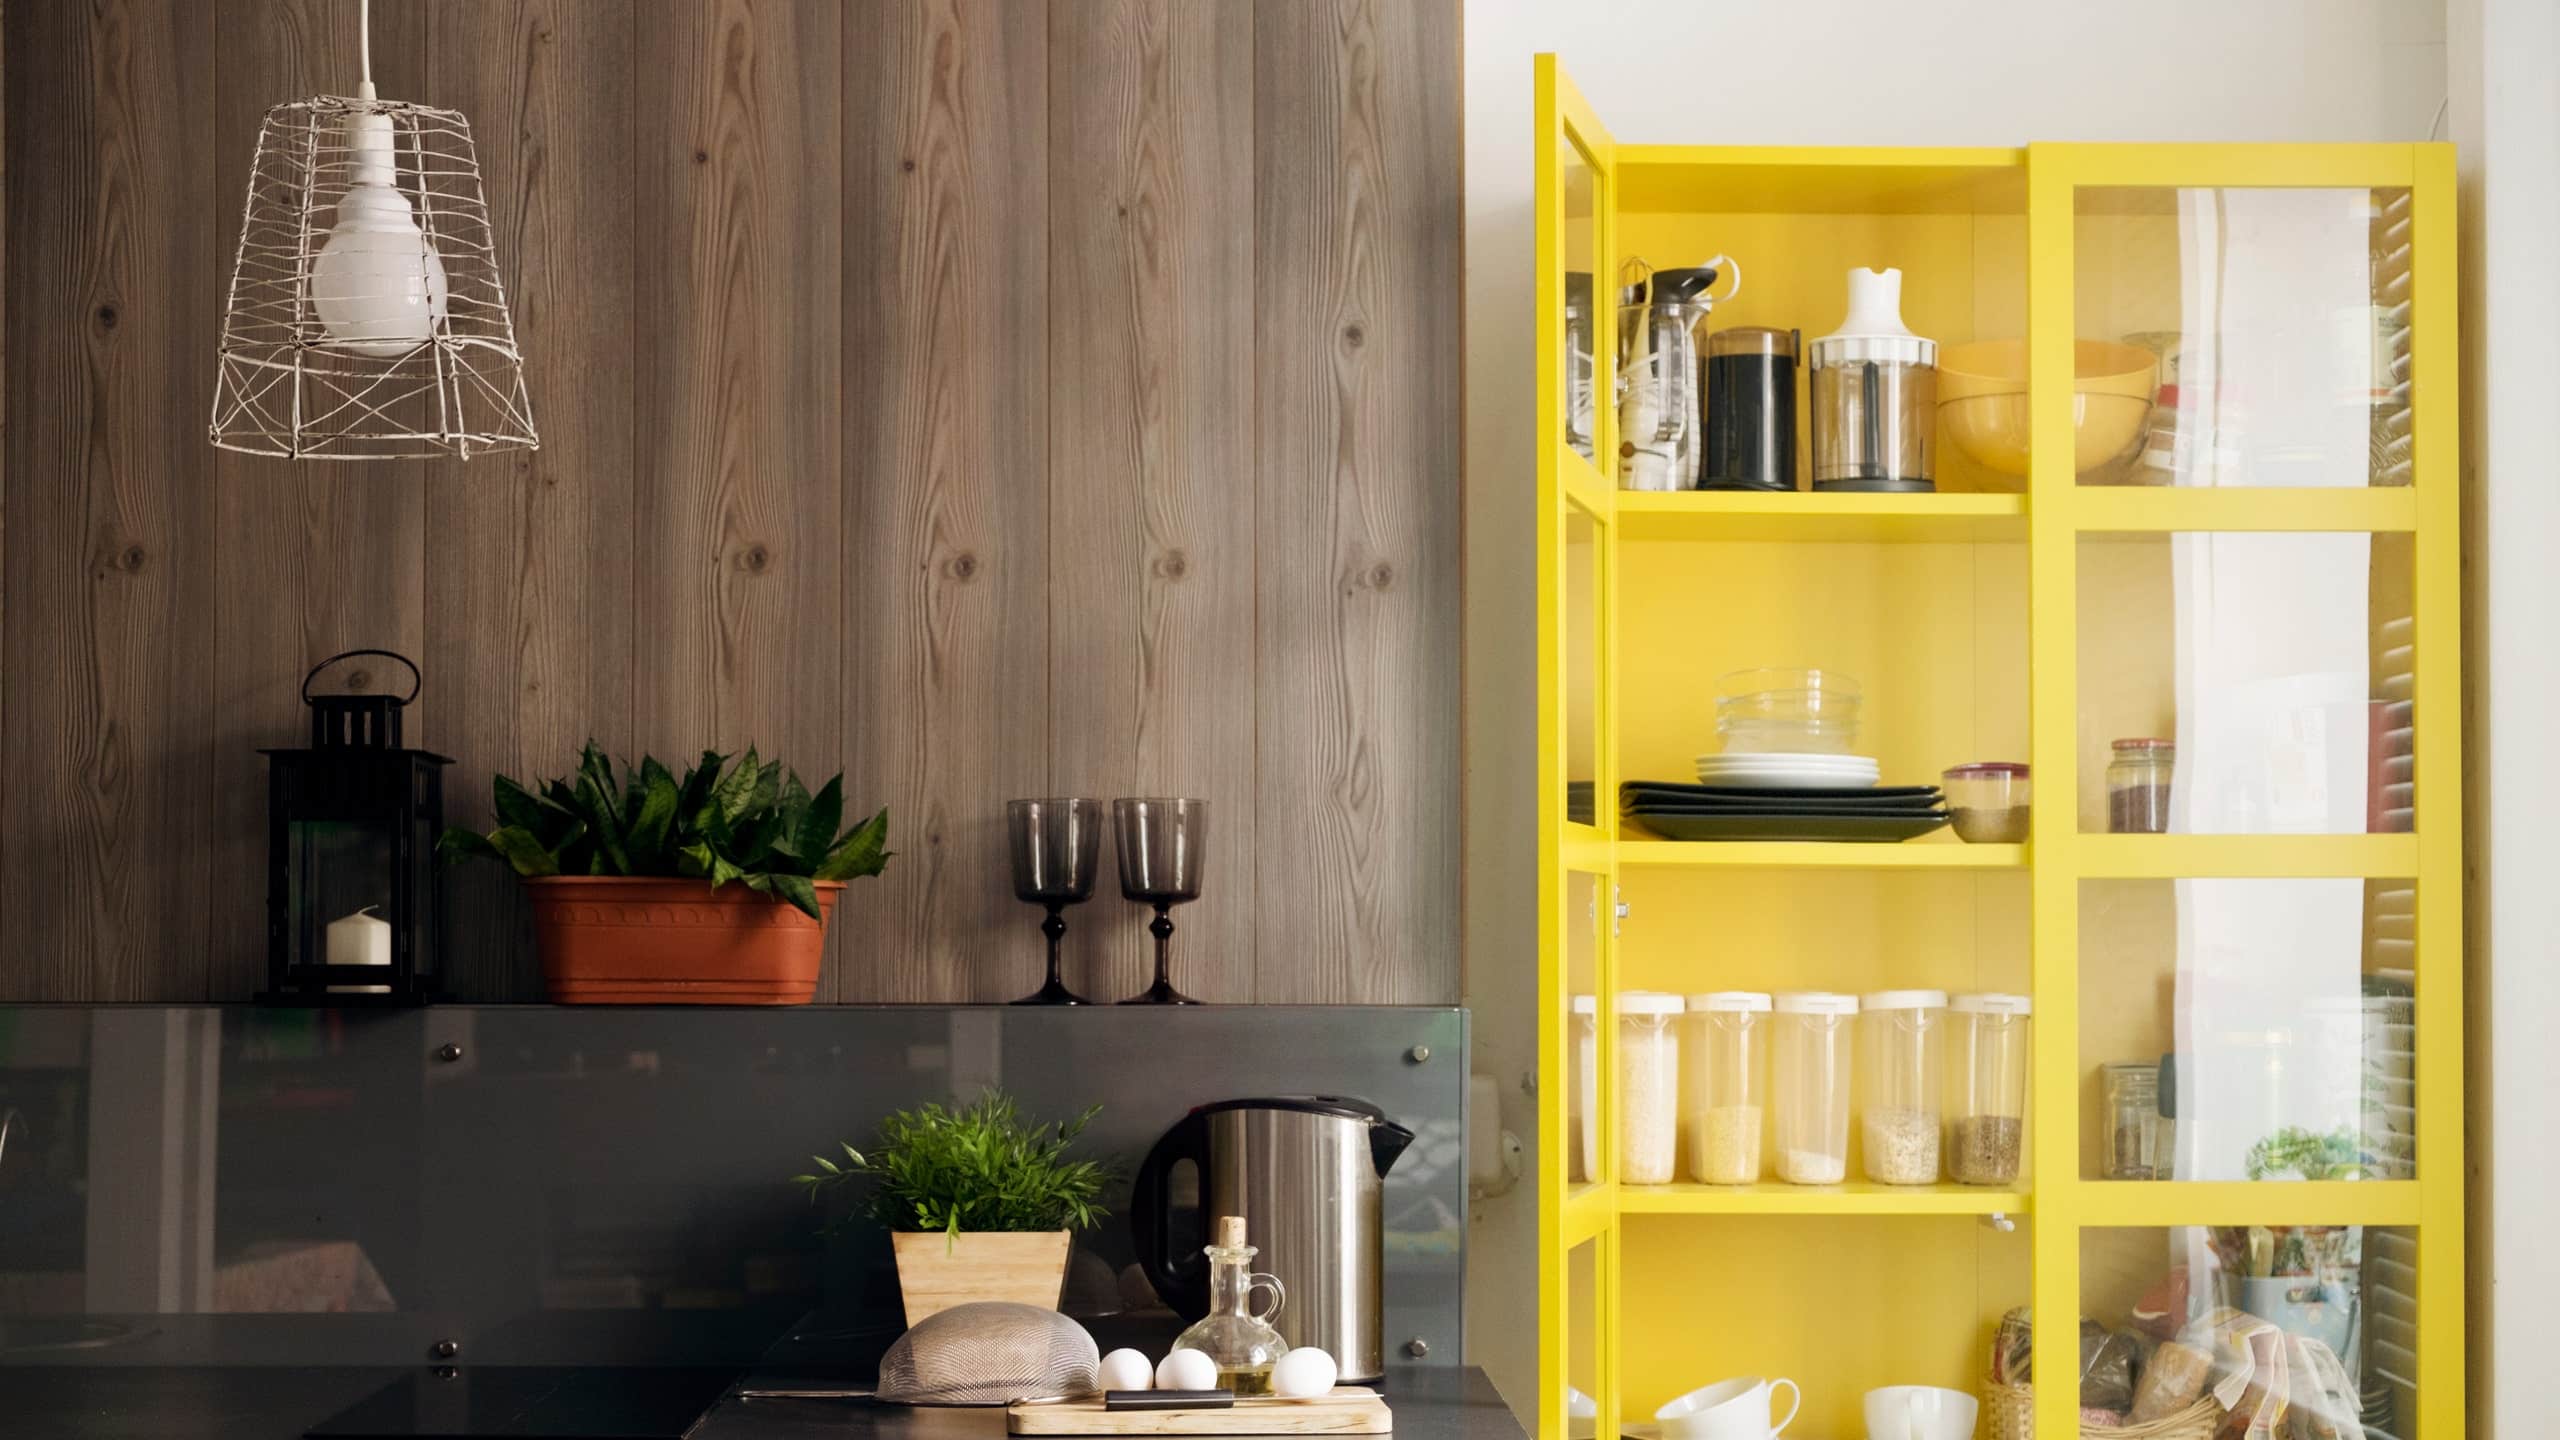 10 Smart Kitchen Organization Ideas & Cabinet Storage